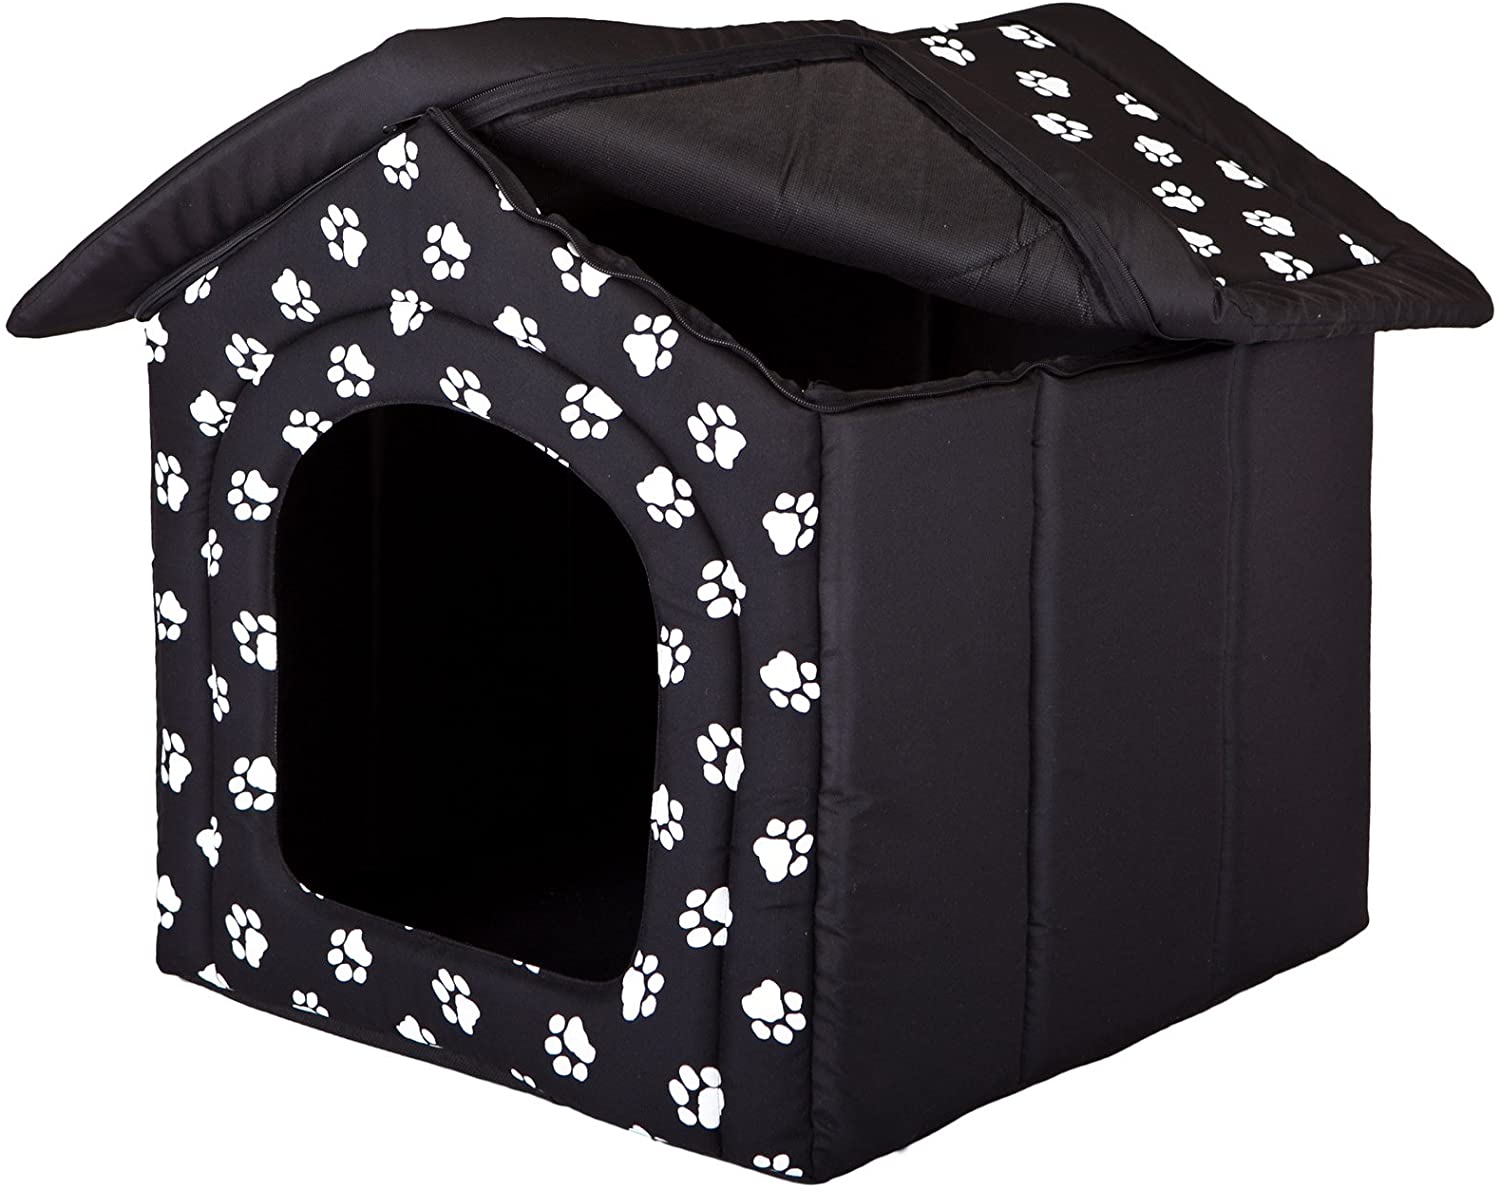  Hobbydog - Caseta para Perro, tamaño 3, Color Negro con Patas. 